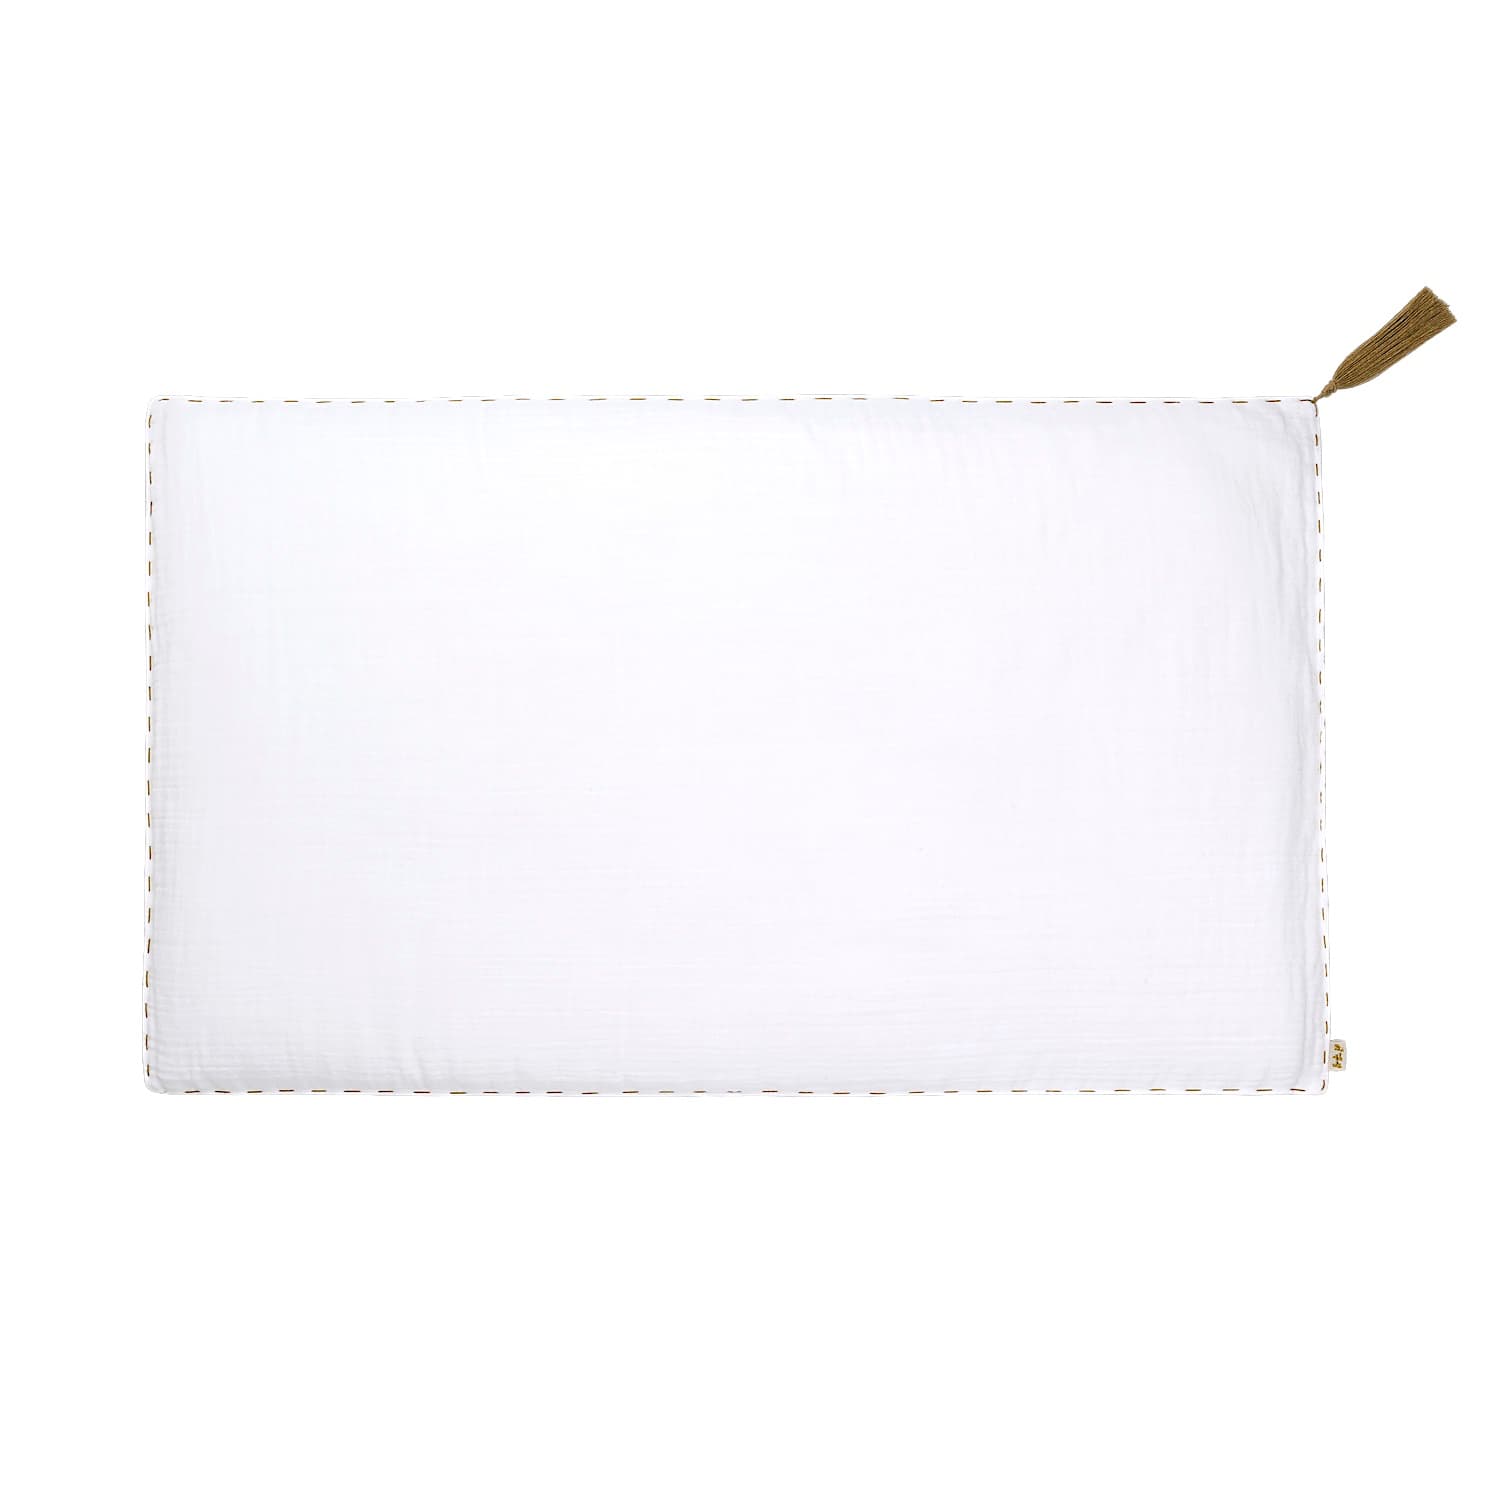 Numero 74 - Cushion Cover Plain - 45x45 cm - White - S001